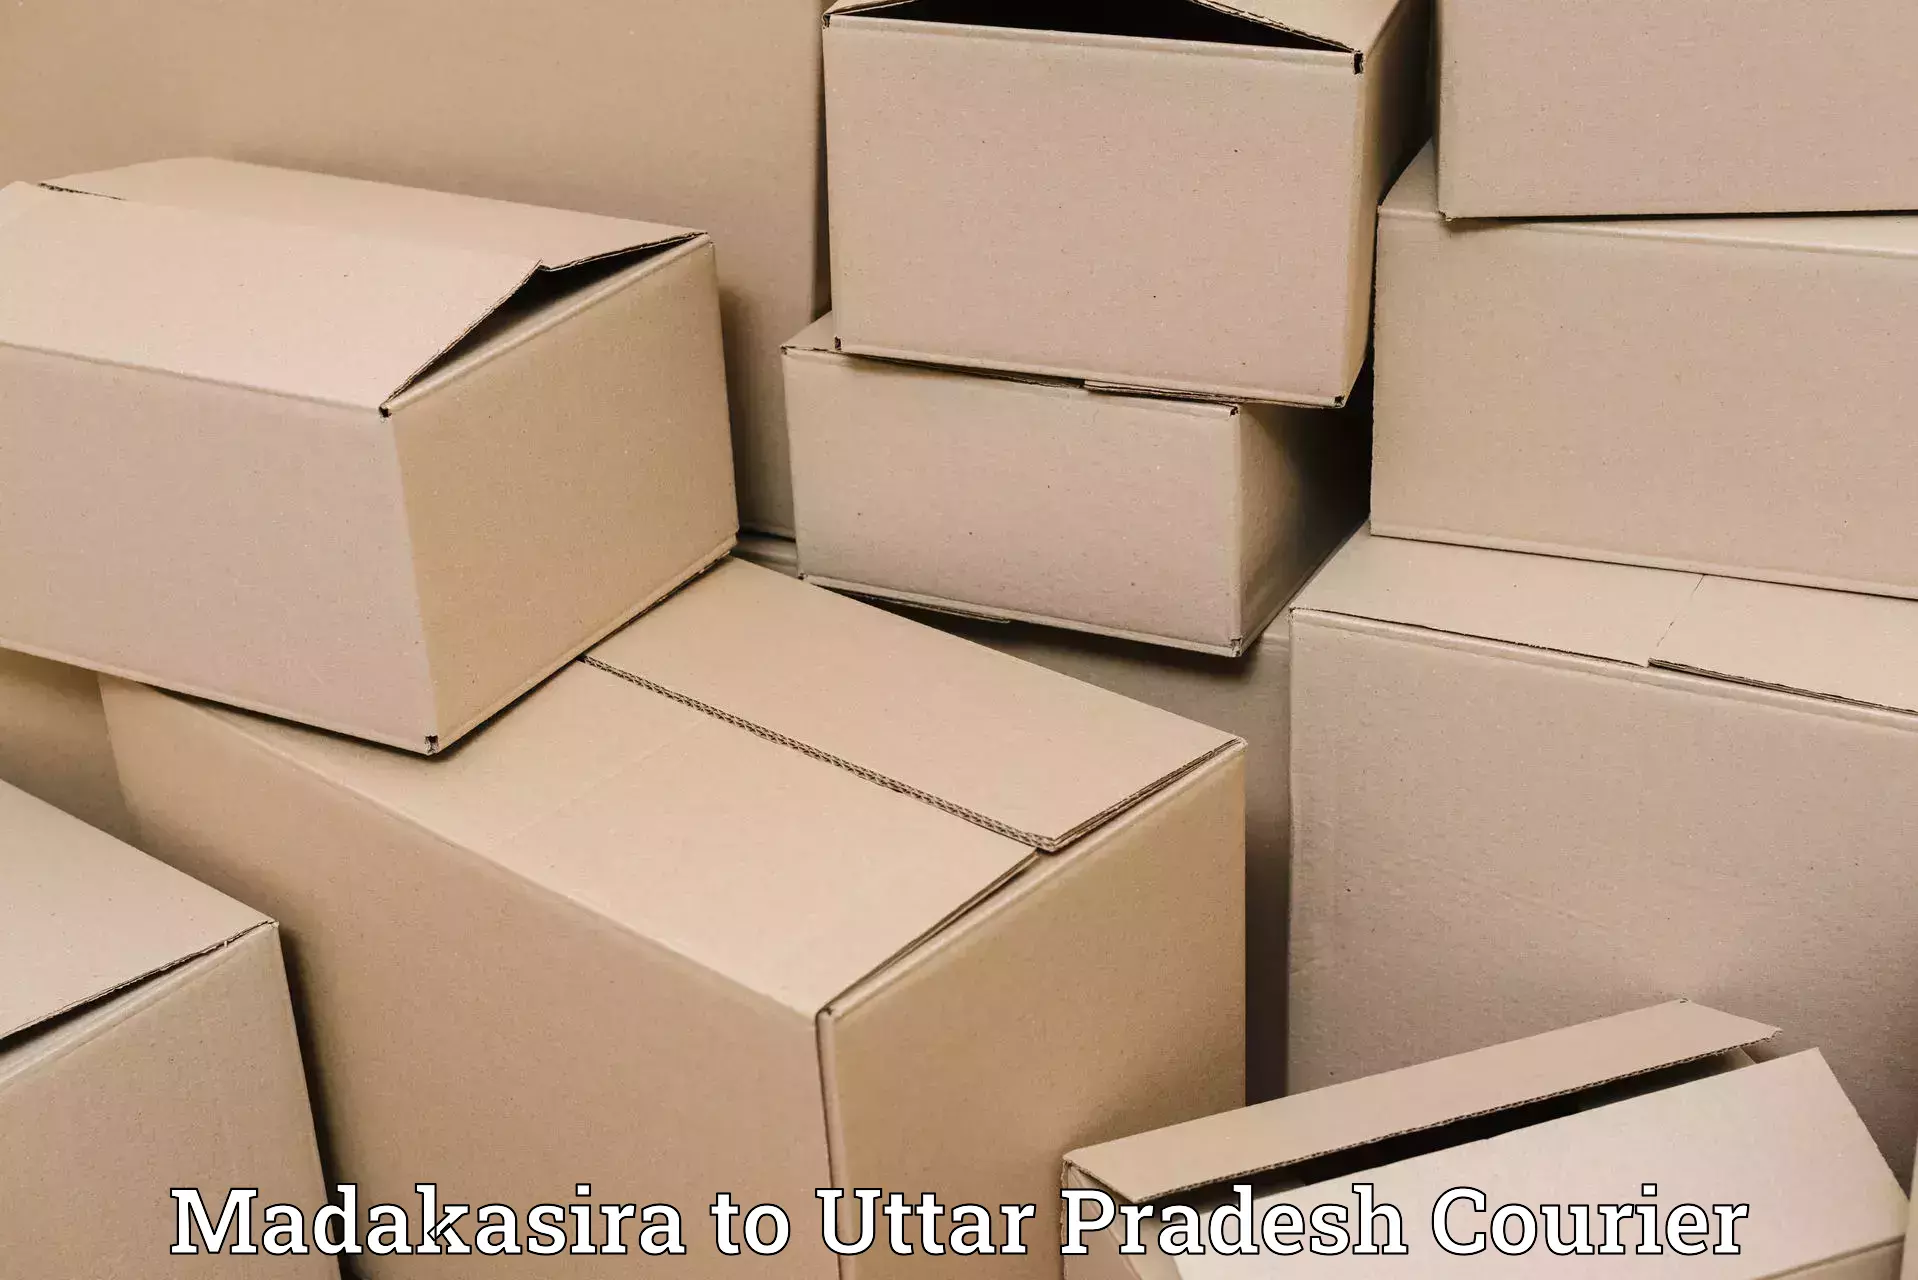 Logistics management Madakasira to Uttar Pradesh